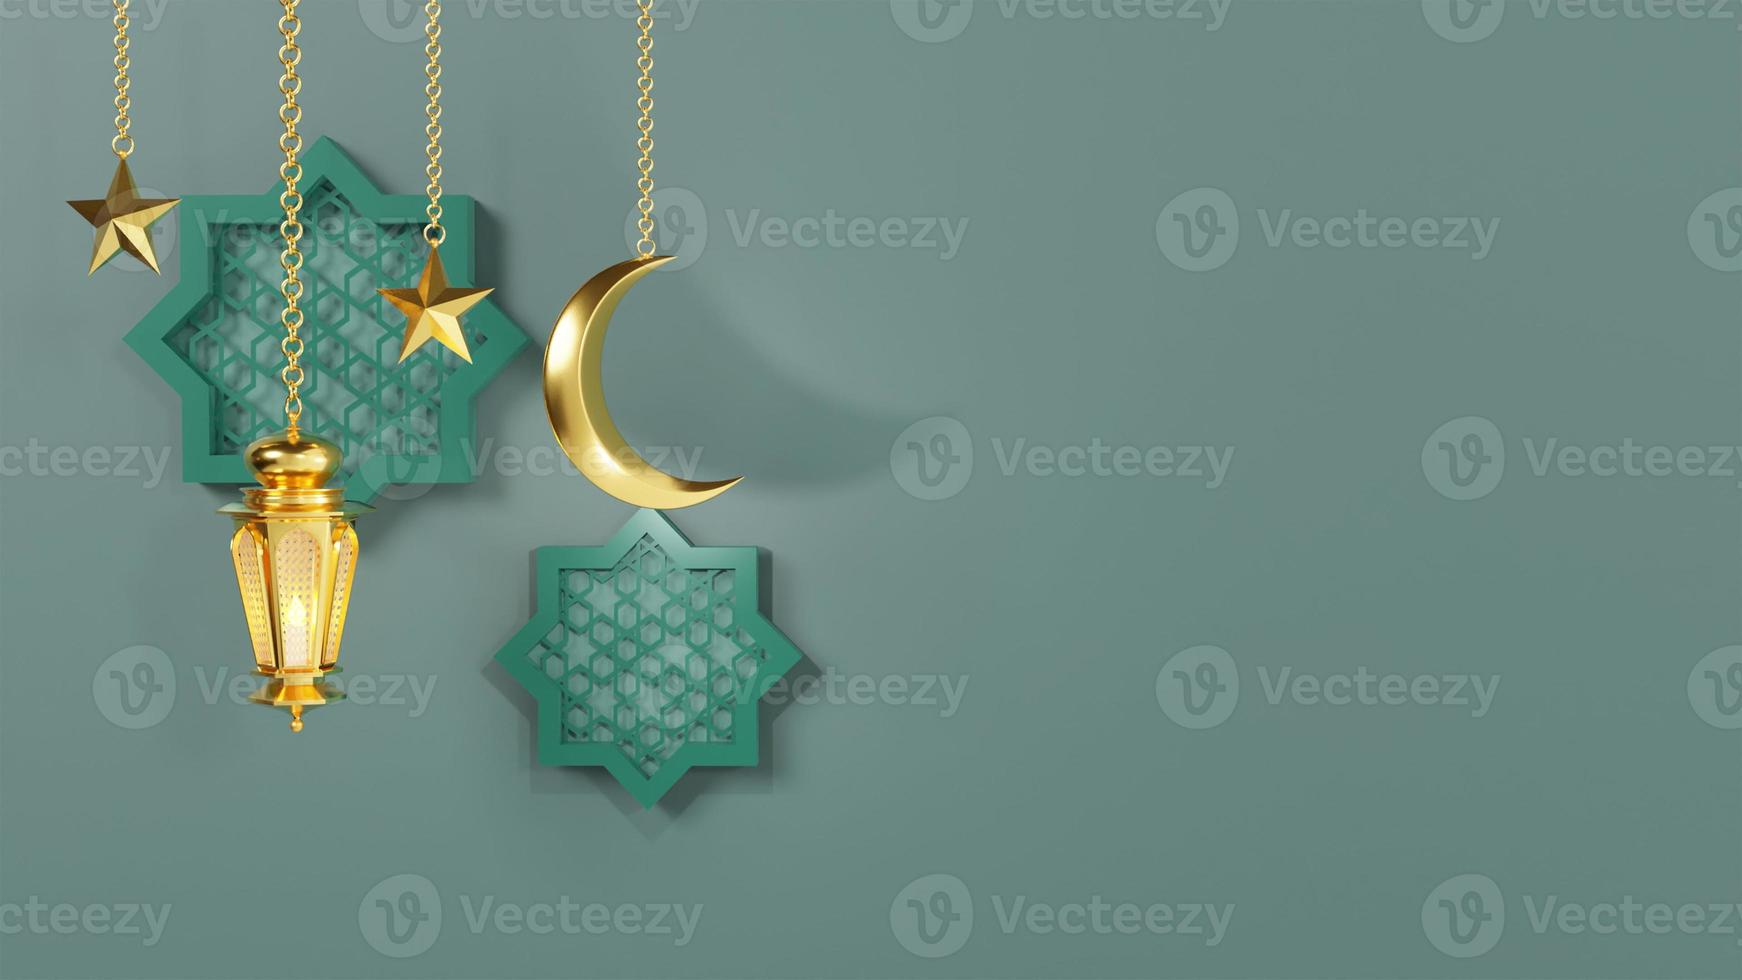 modèle de voeux ramadan kareem avec lanternes arabes et lune sur le fond pour les produits publicitaires - illustration de rendu 3d pour cartes, salutations. photo